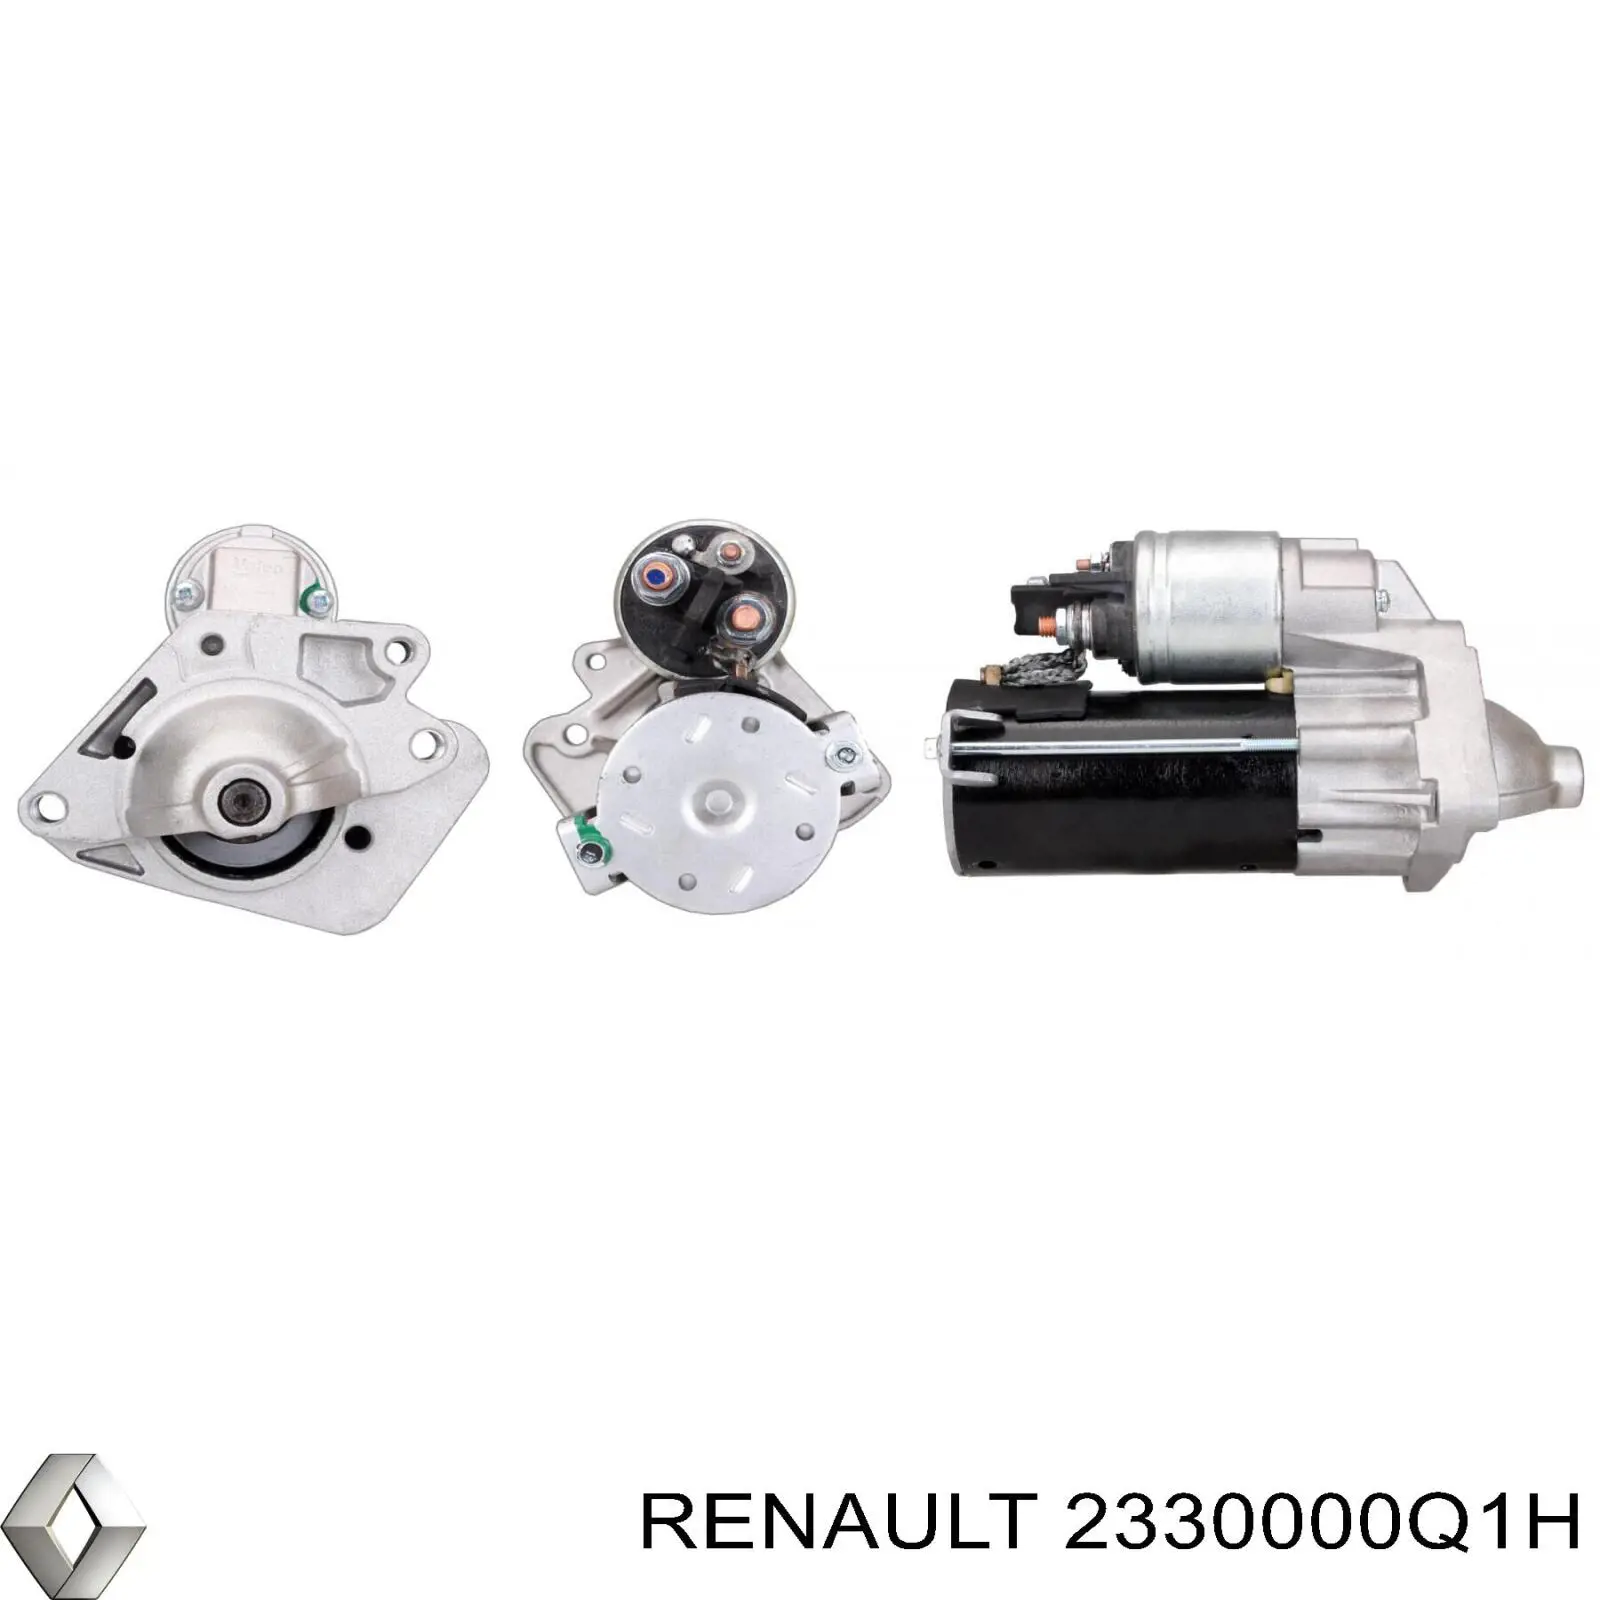 2330000Q1H Renault (RVI) motor de arranque